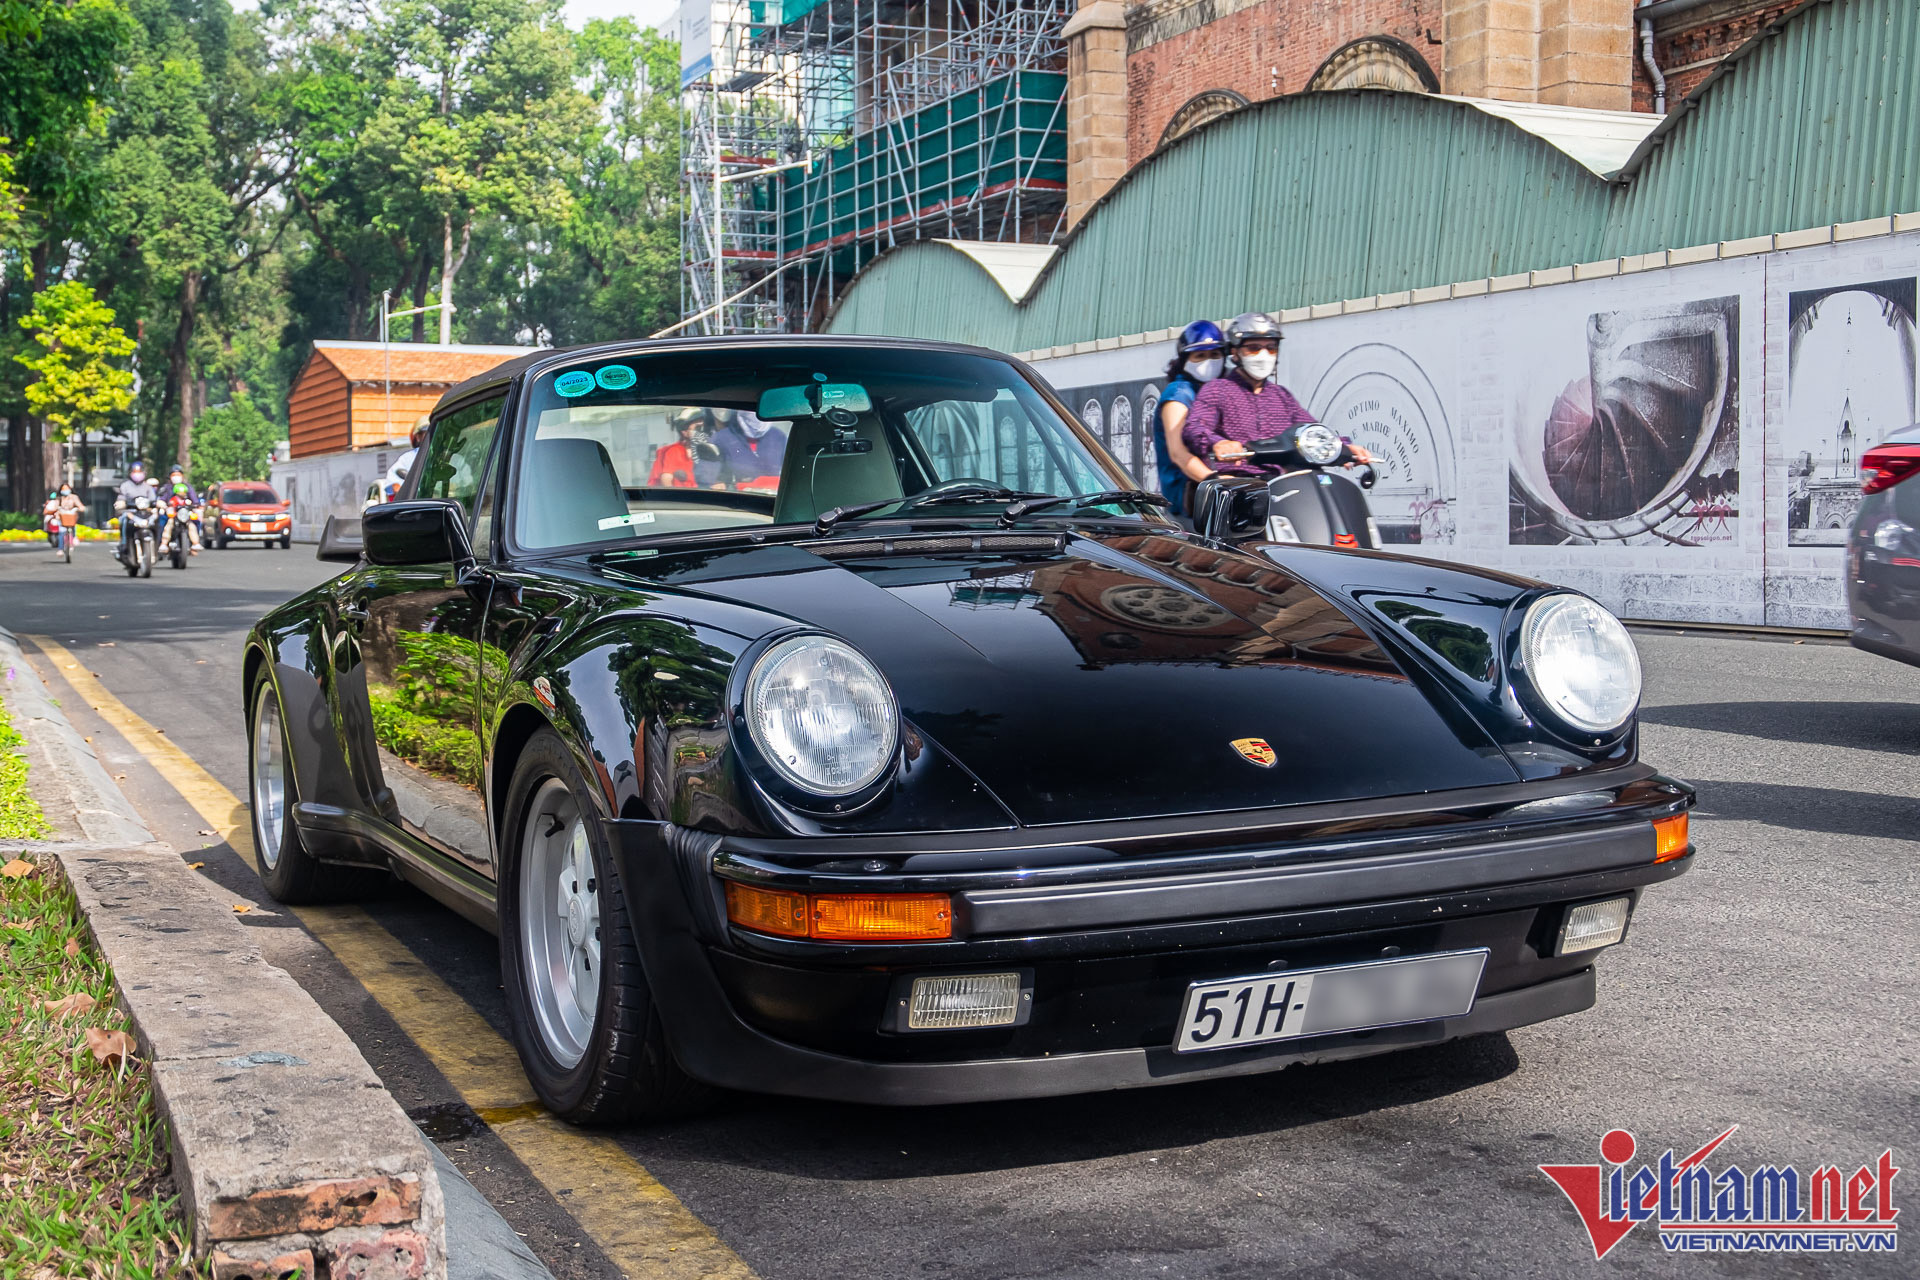 Bắt gặp Porsche 930 Turbo Cabriolet hơn 30 năm tuổi tại Sài Gòn